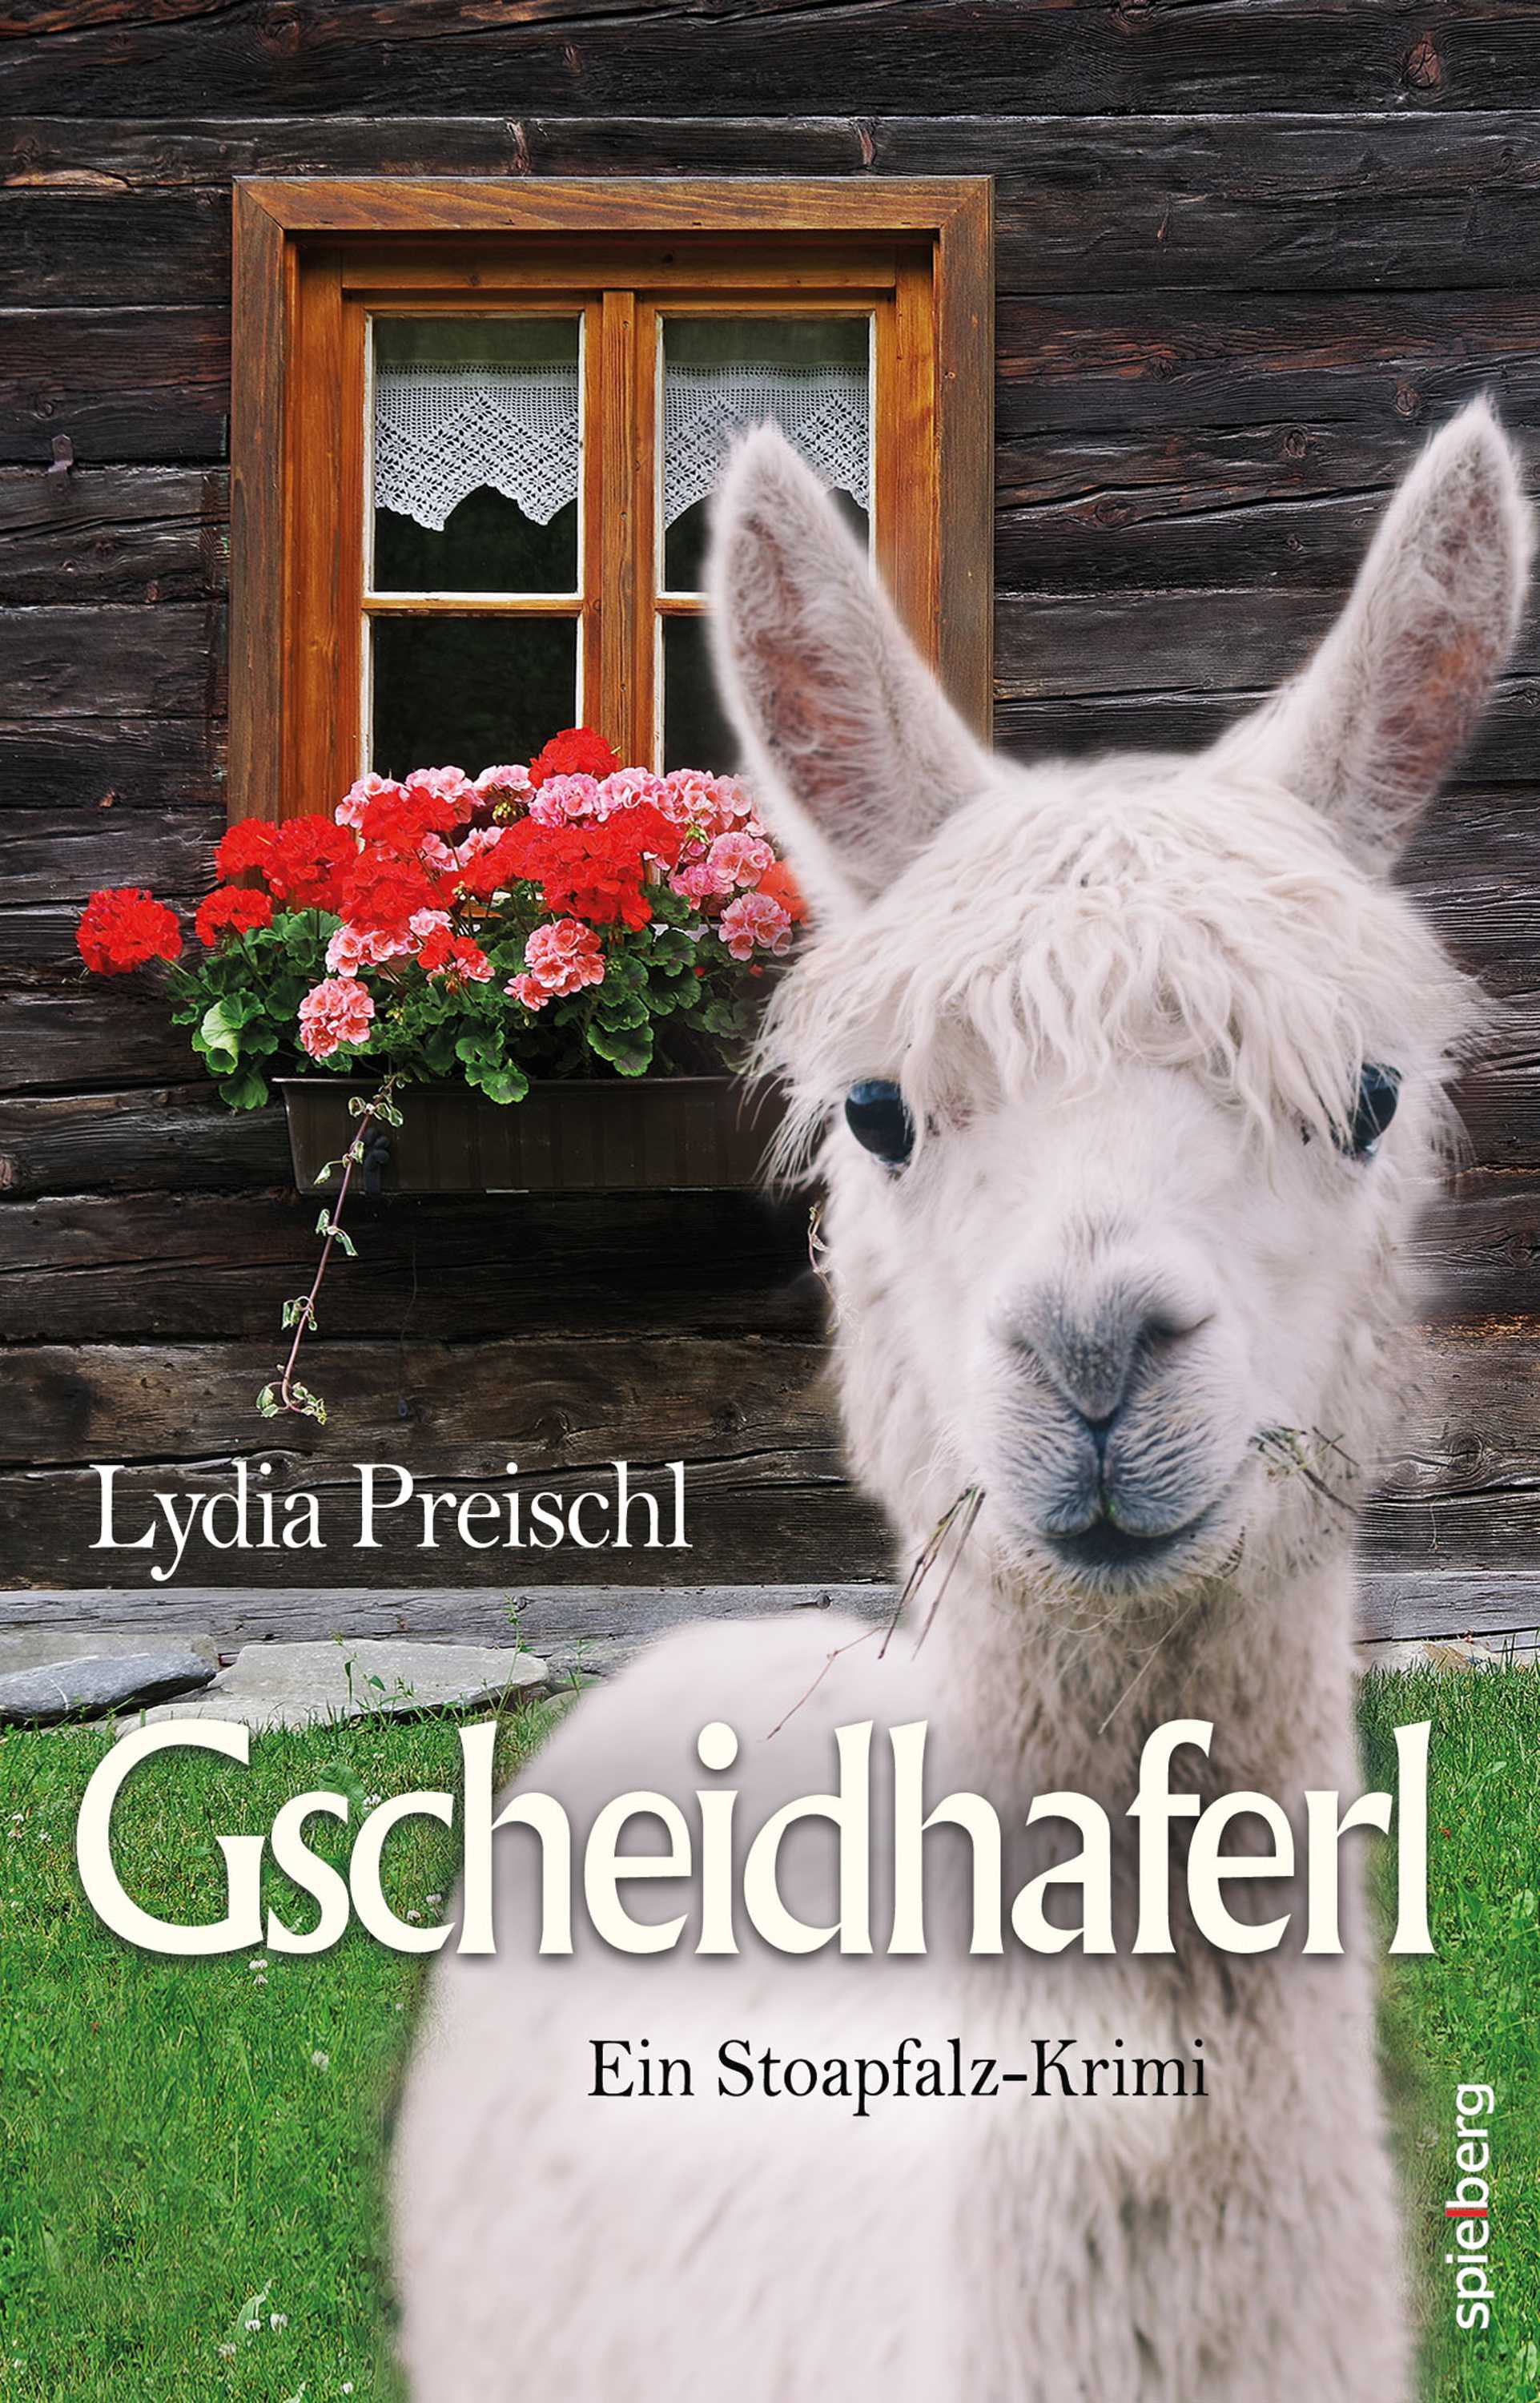 Preischl Lydia - Gscheidhaferl